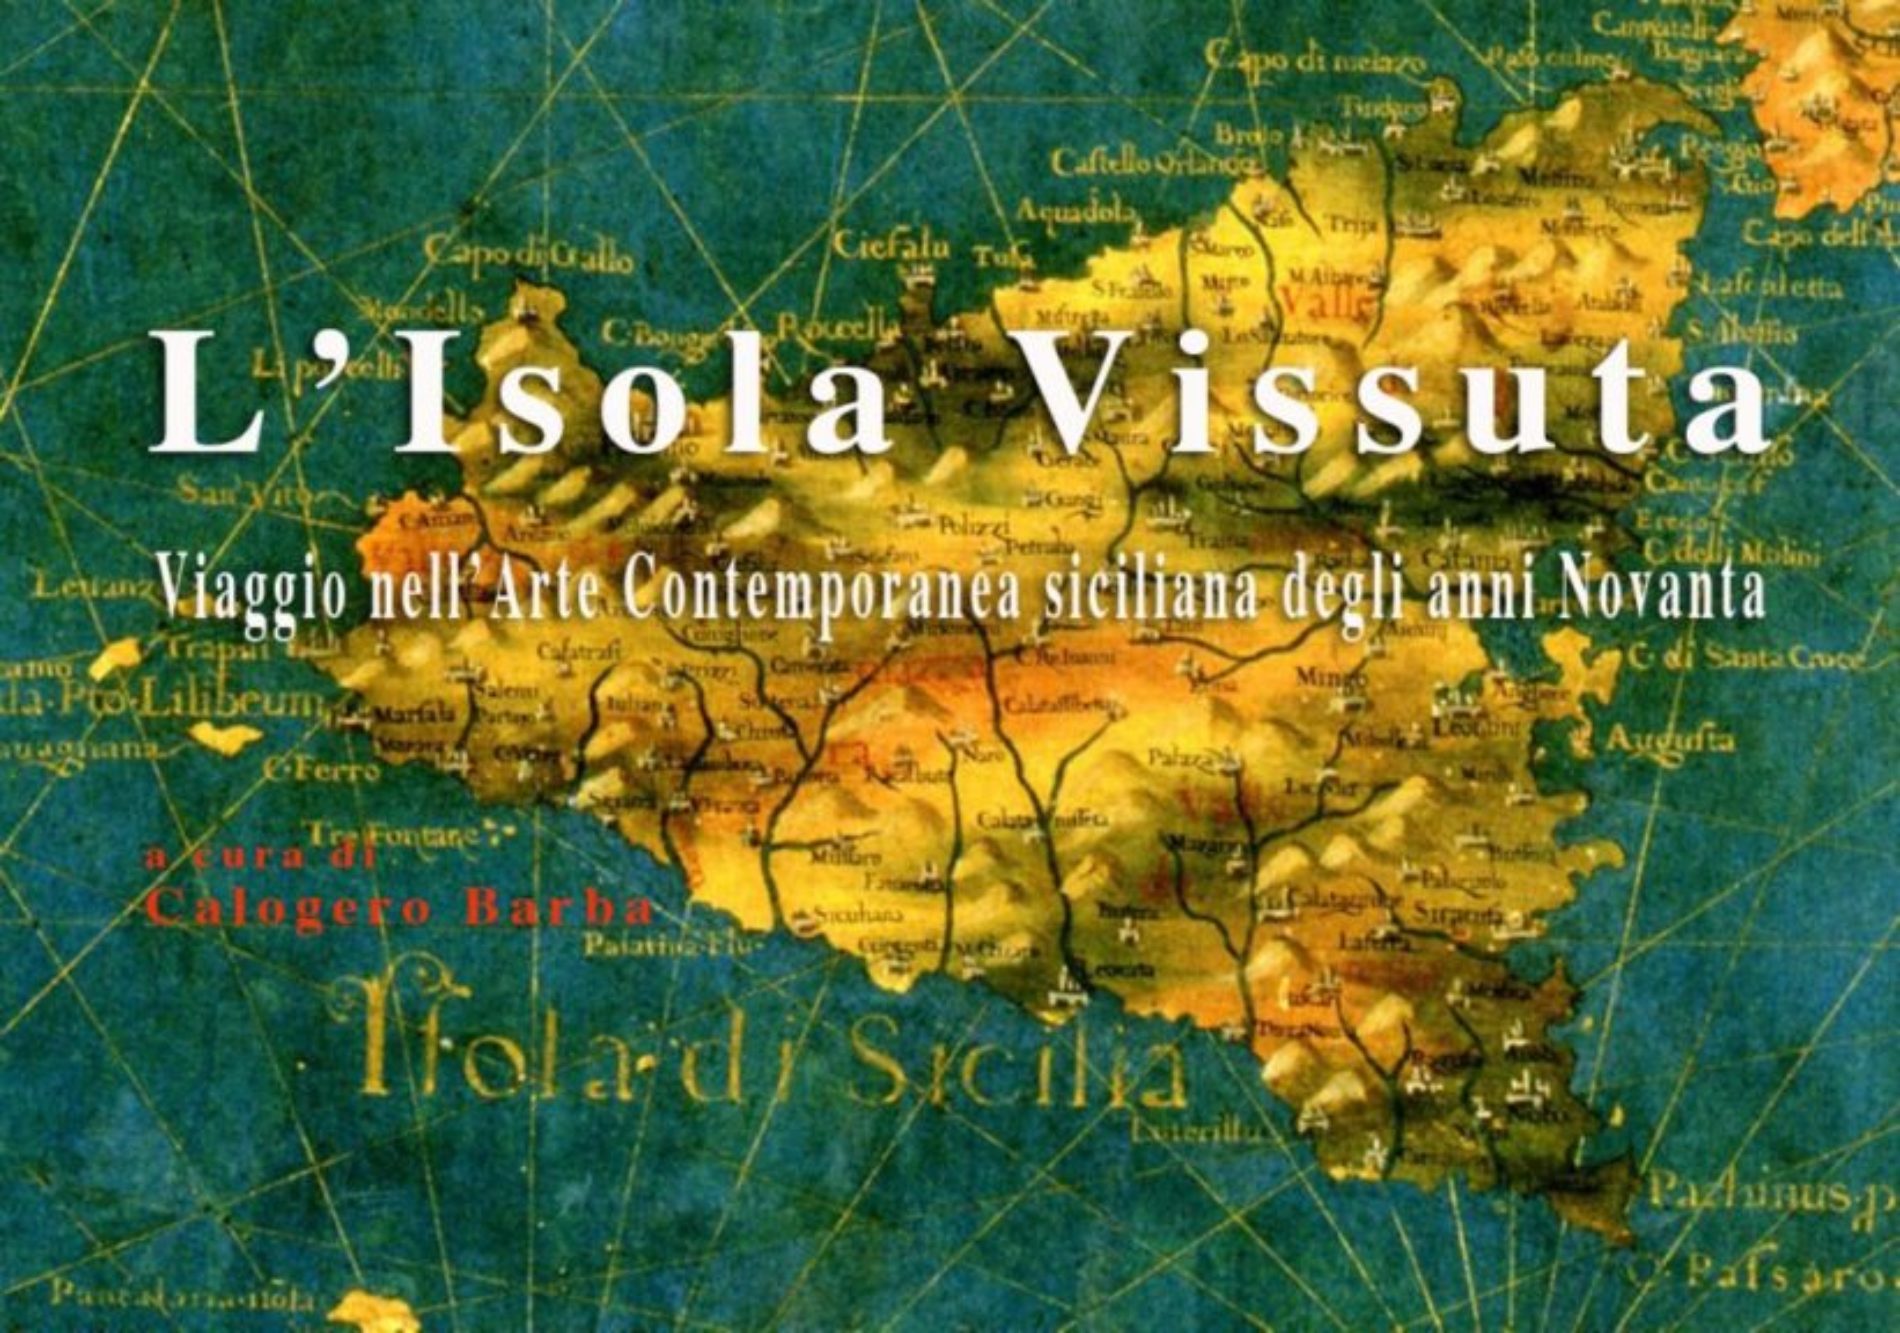 L’Isola Vissuta: Viaggio nell’Arte Contemporanea siciliana degli anni Novanta, a cura di Calogero Barba